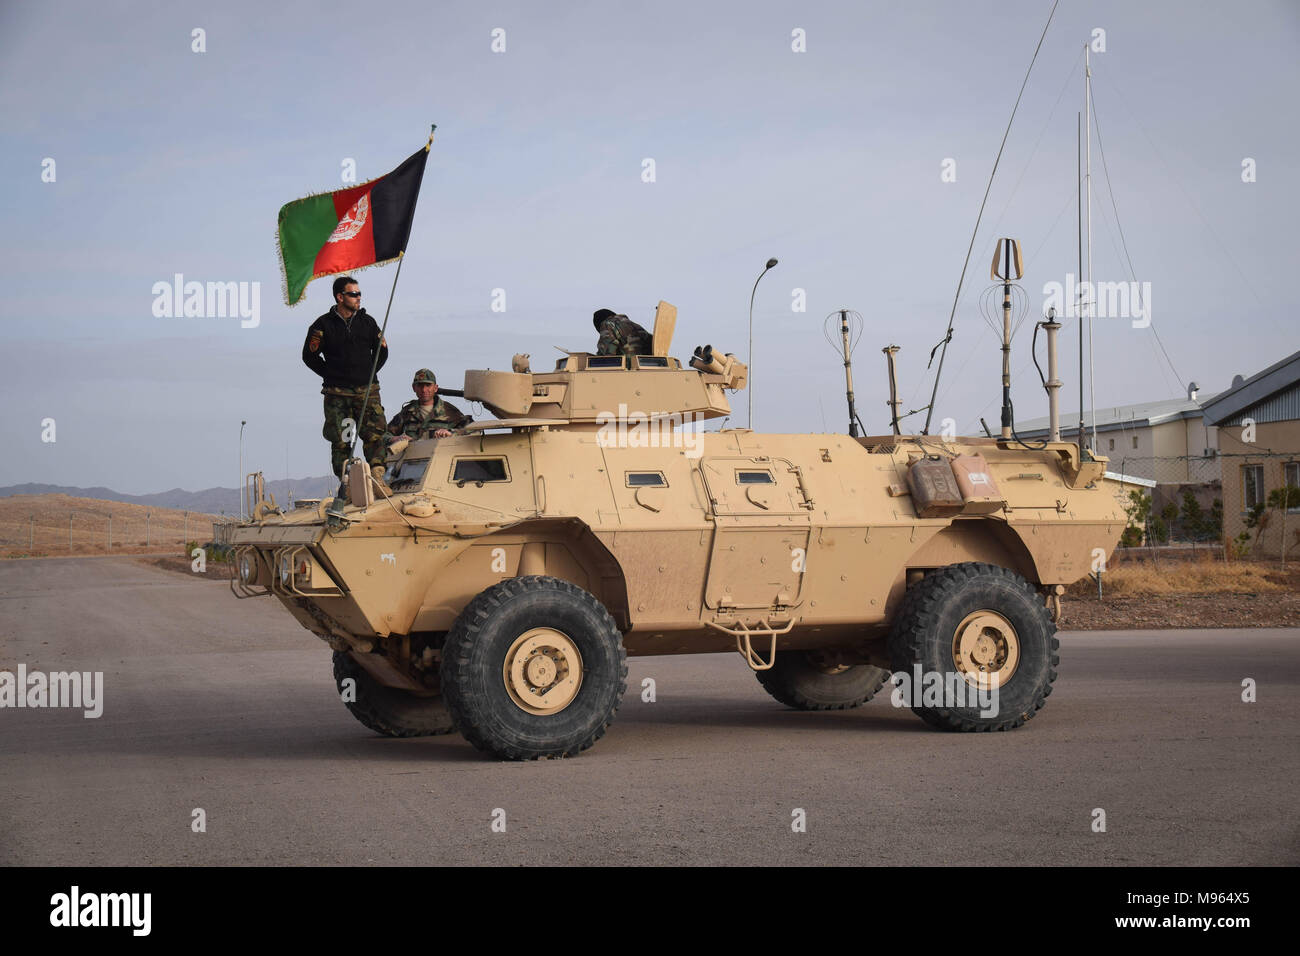 Les Commandos afghans sur une force de frappe mobile Véhicule (une version du M1117 Armored Véhicule de sécurité) dans la base militaire de Shindand, province de Herat. Les forces militaires d'élite de l'Afghanistan - les Commandos et les Forces spéciales sont un des éléments clés de la stratégie américaine en Afghanistan et à son tour la lutte contre les talibans et autres insurgés autour. Ces photos montrent les Commandos et les forces spéciales au cours de l'entraînement et sur le terrain ; également juste avant et après une opération de l'ouest dans la province afghane de Farah. Banque D'Images